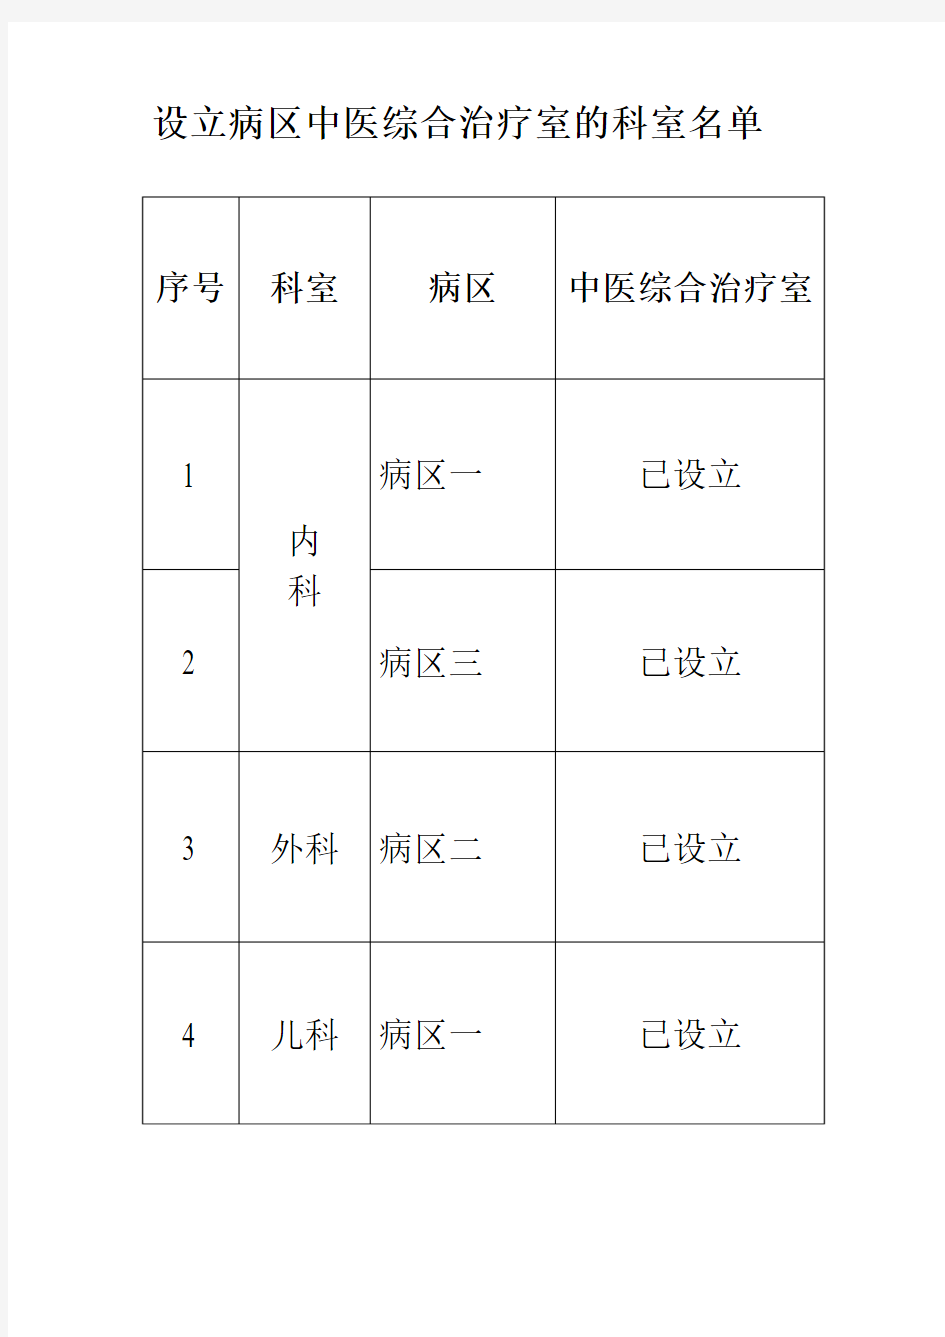 3.9.3中医综合治疗室名单